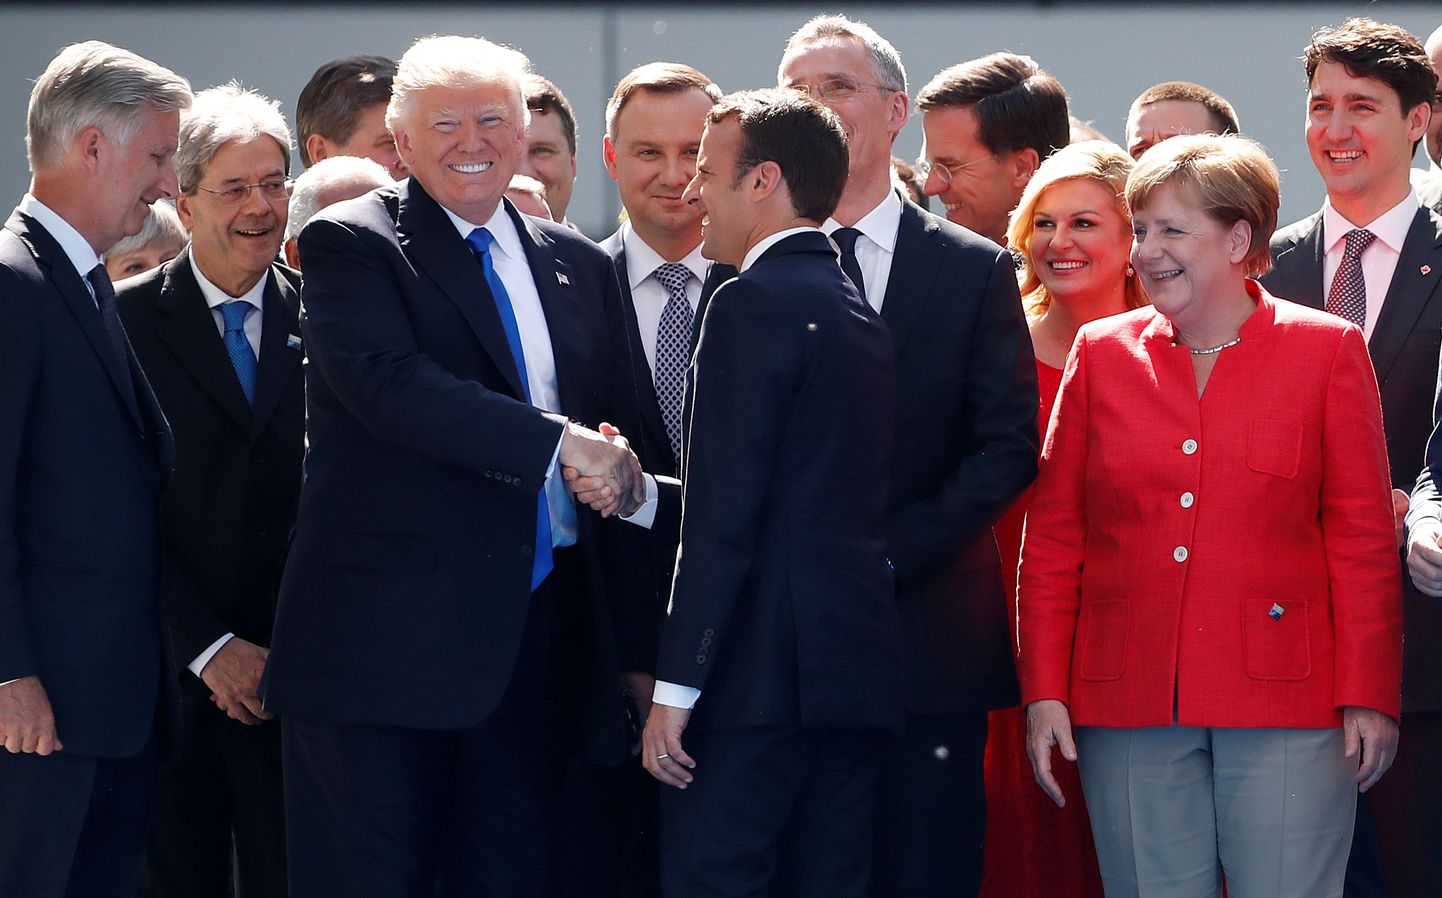 Ameerika Ühendriikide president Donald Trump oma esimesel tutvumisvisiidil NATO peakorterisse Brüsselis.